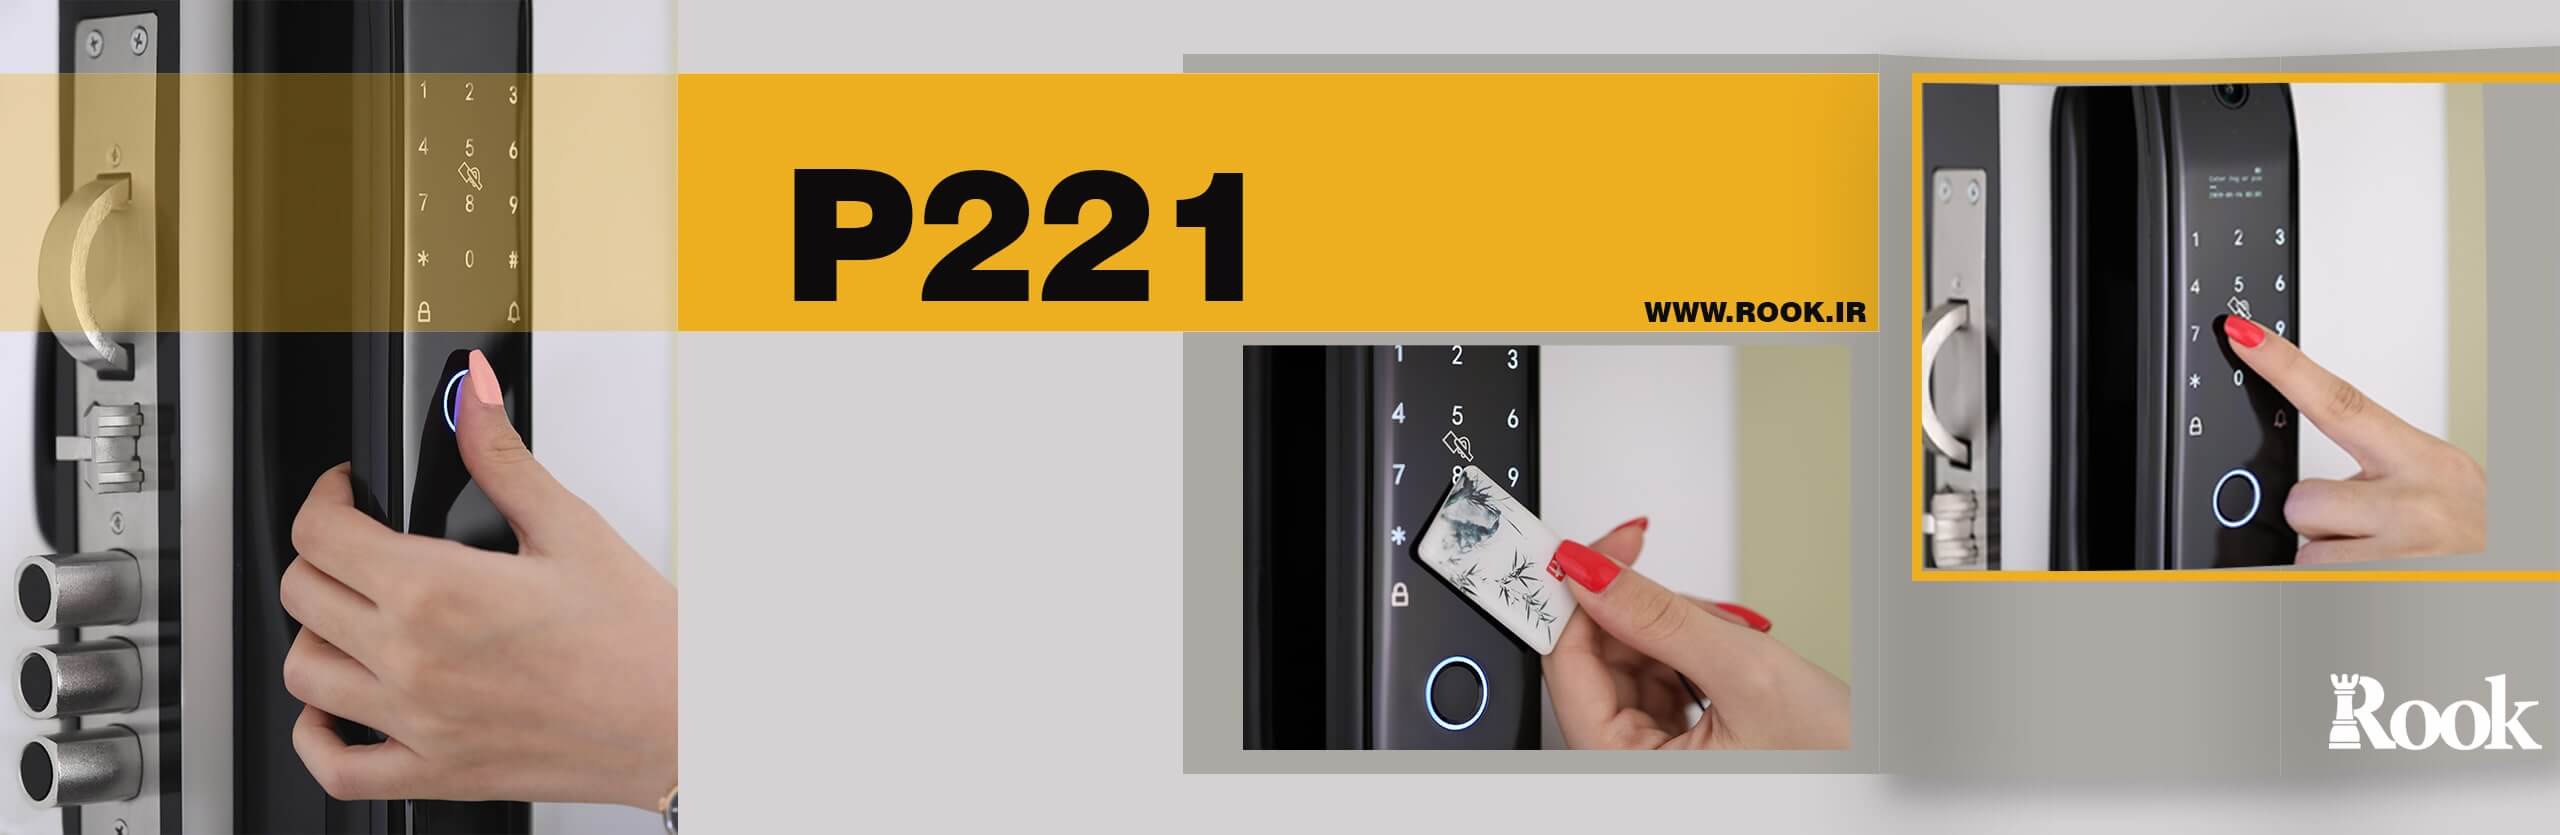 قفل دیجیتال روک P221